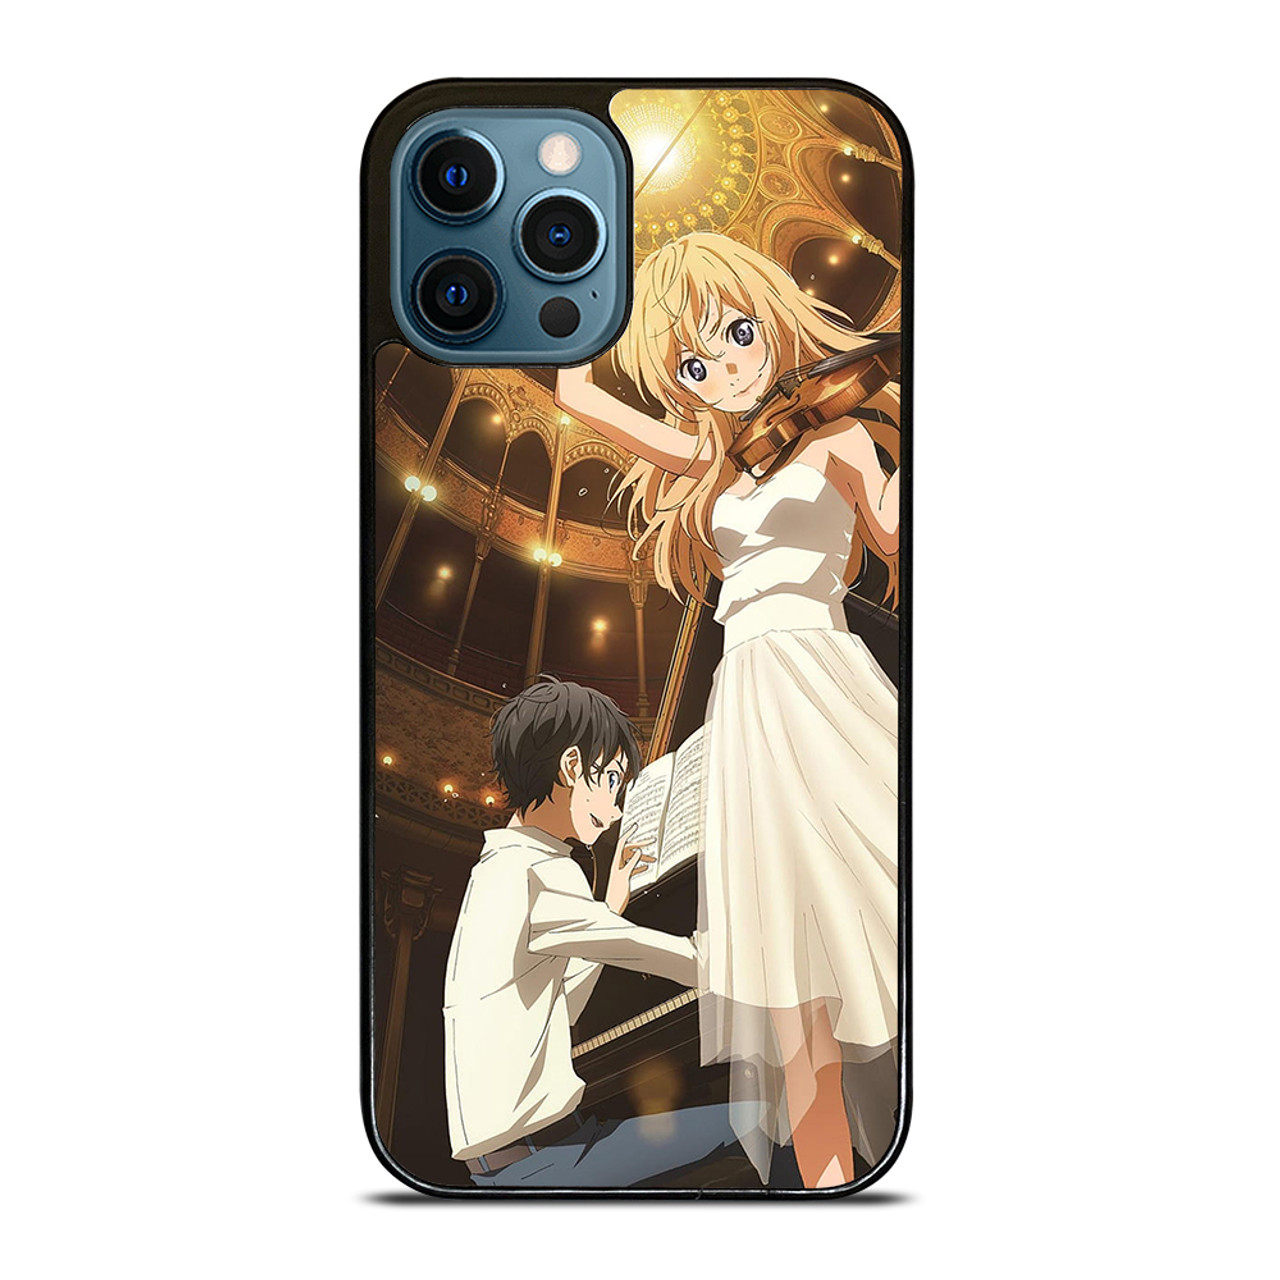 SHIGATSU WA KIMI NO USO KAORI ANIME iPhone 12 Pro Max Case